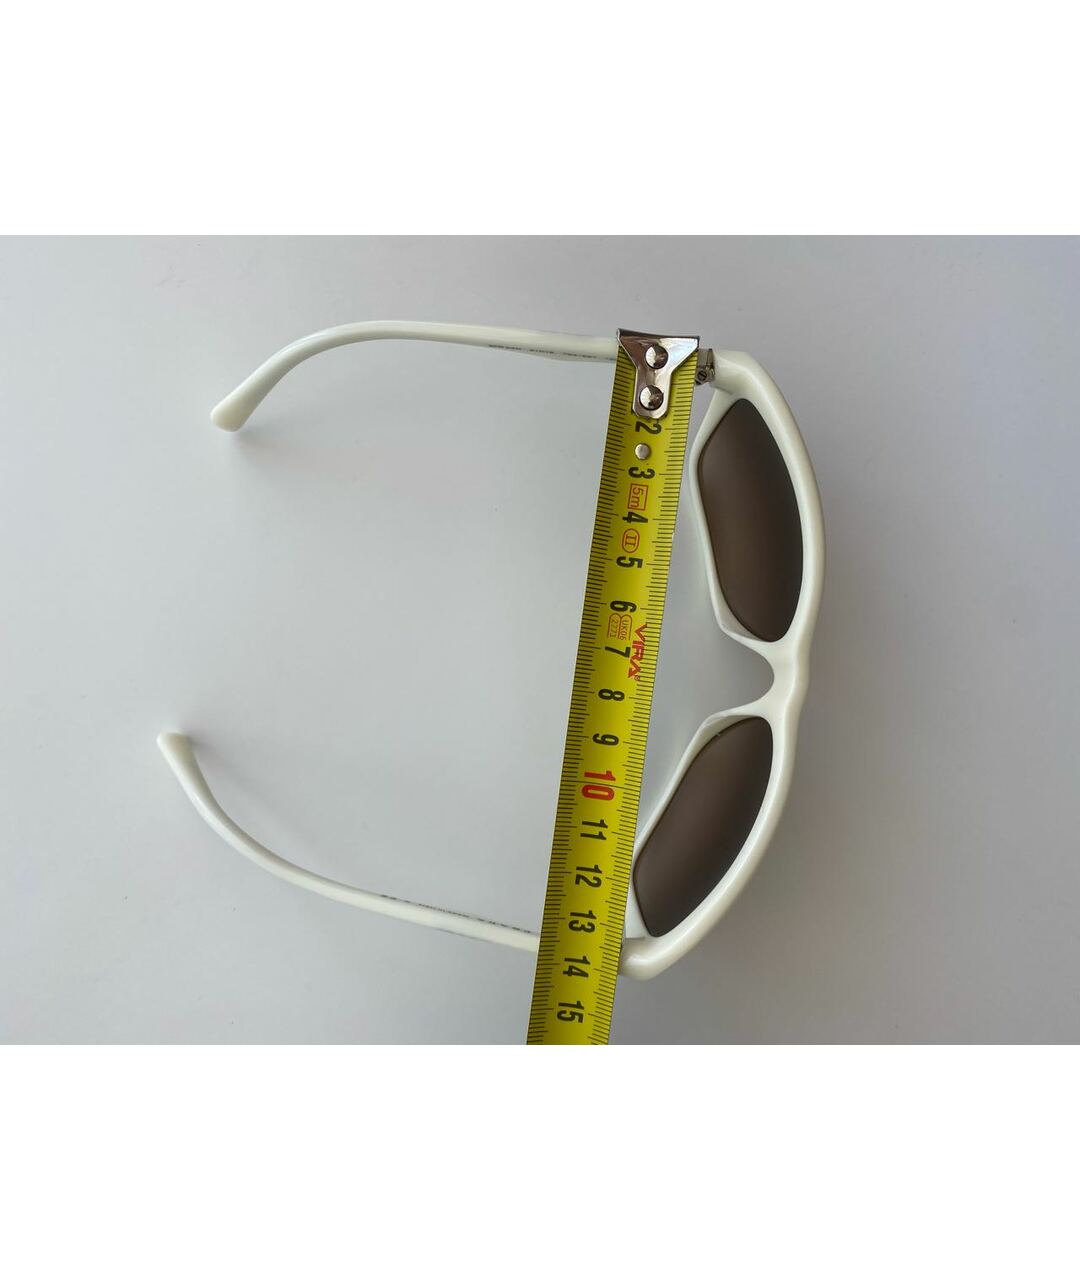 PRADA Белые пластиковые солнцезащитные очки, фото 6